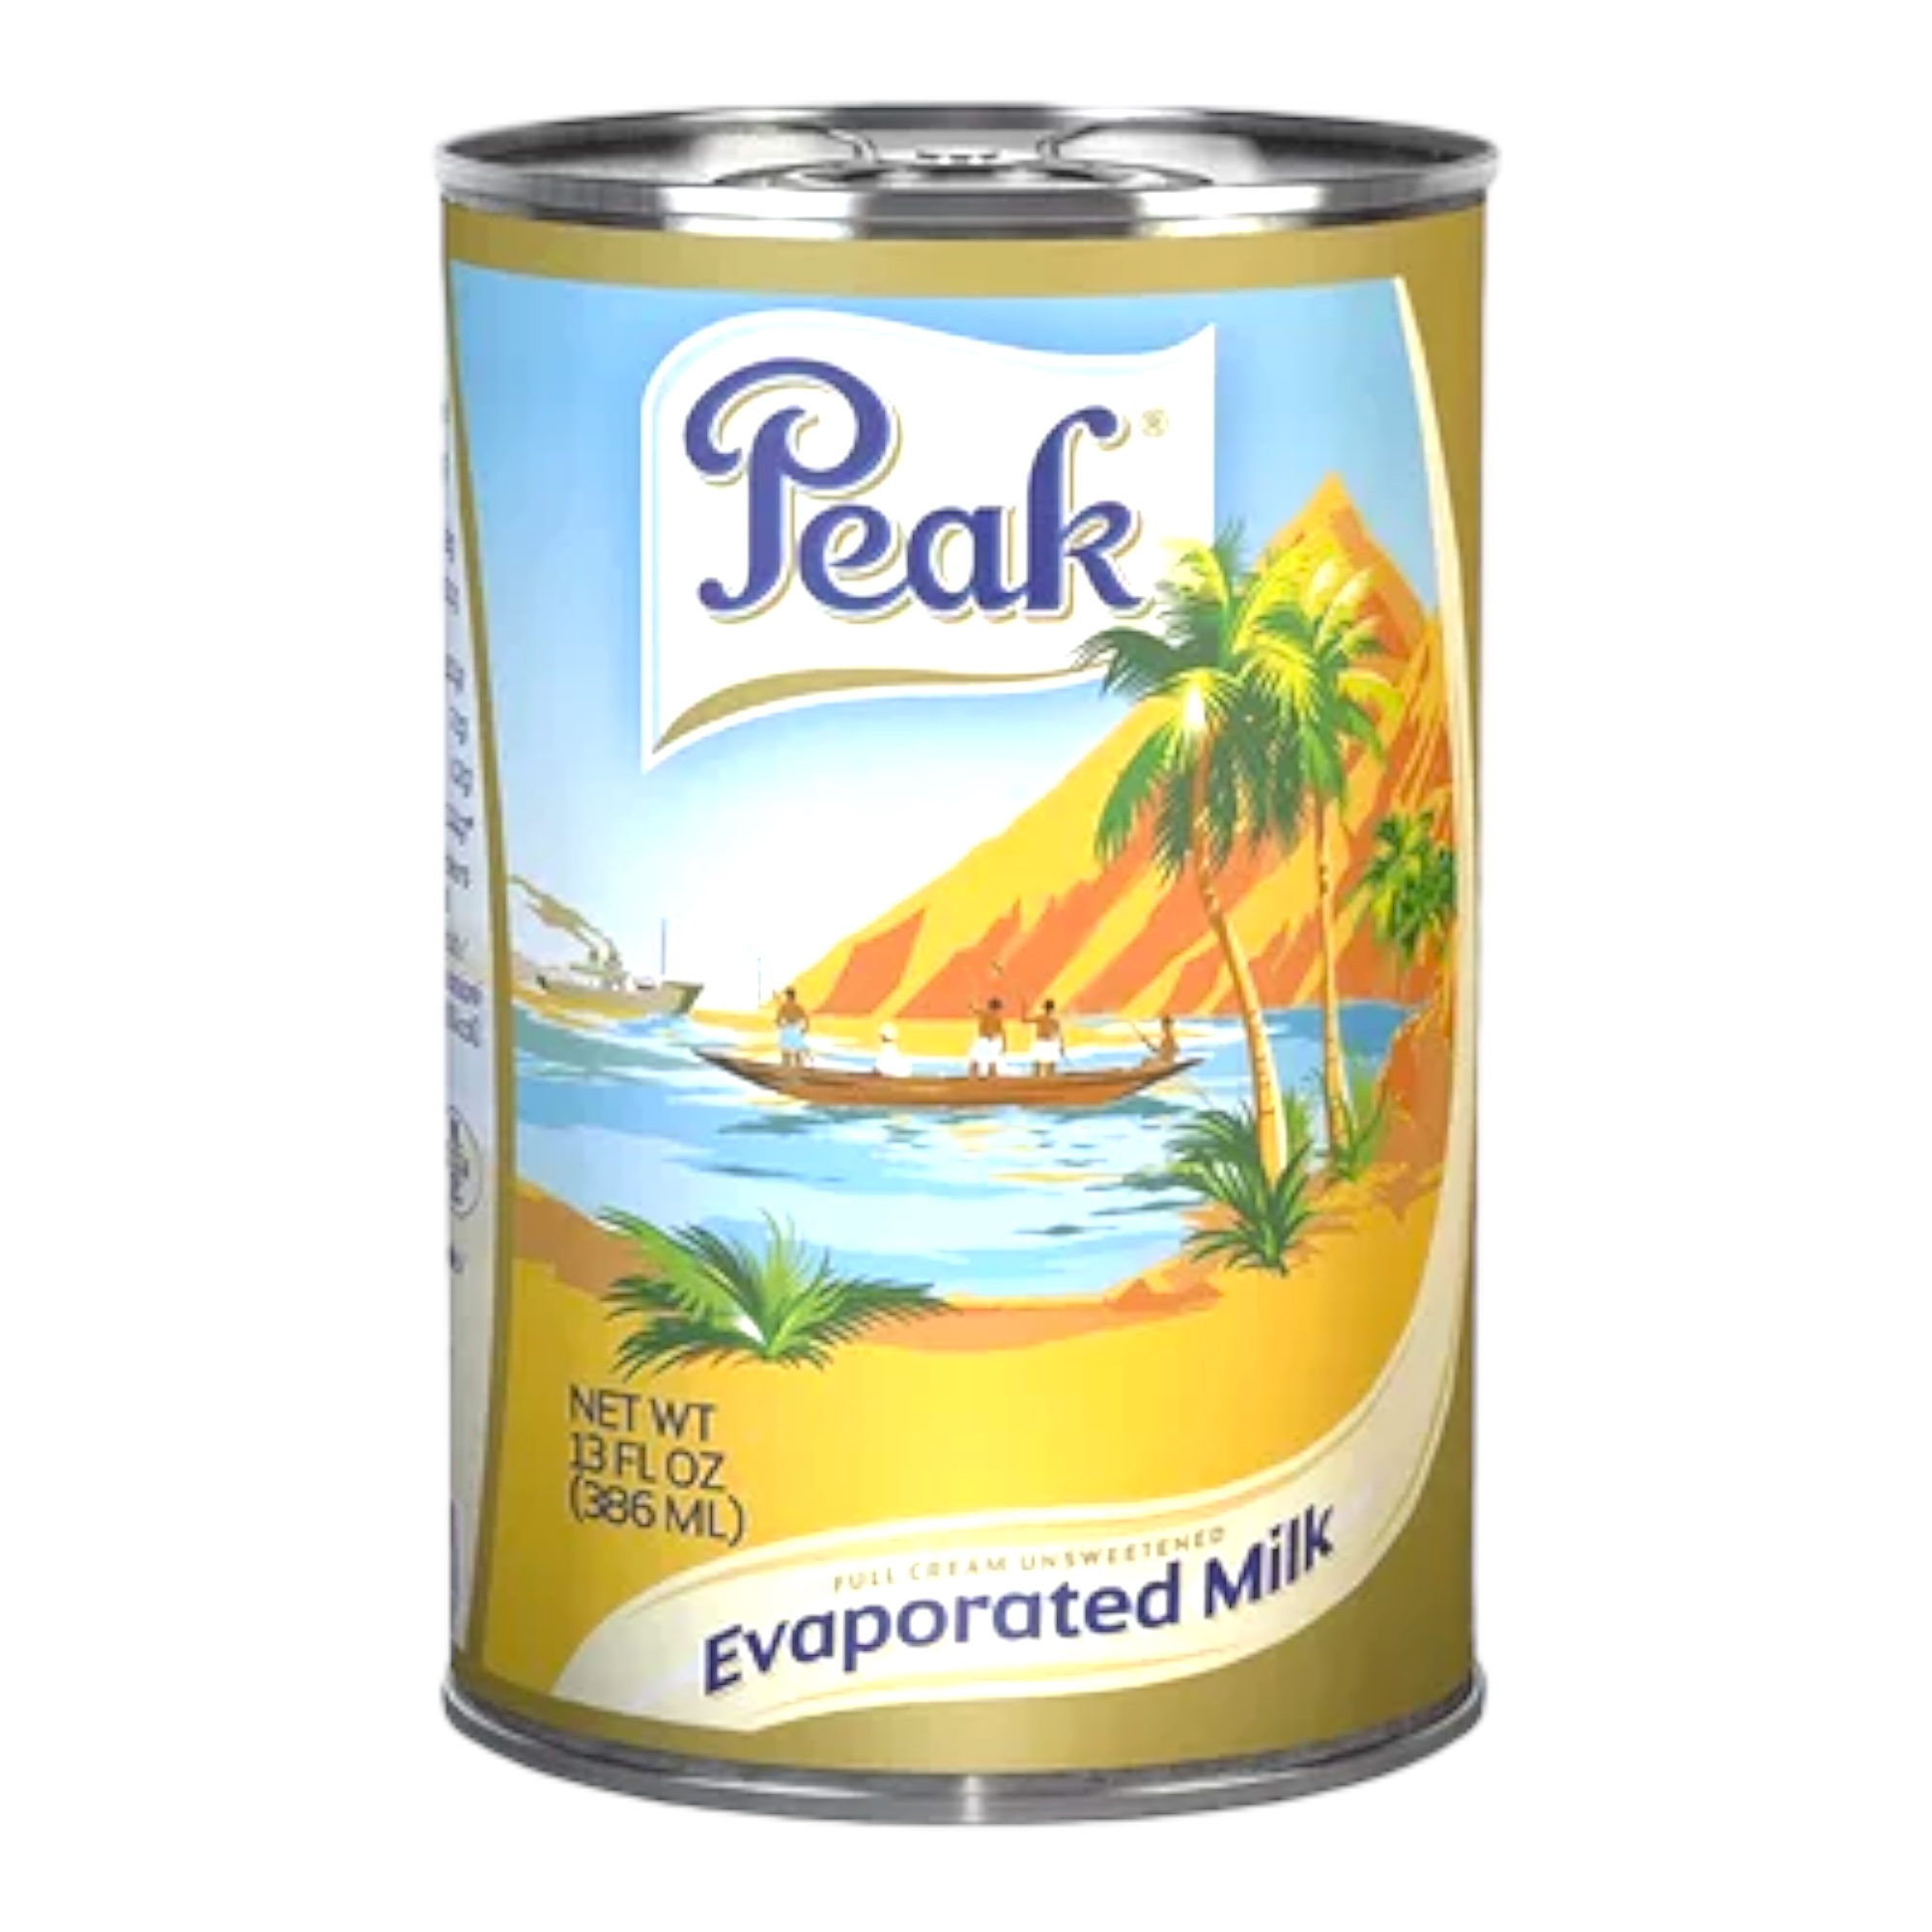 Peak Milk Evaporated 13floz